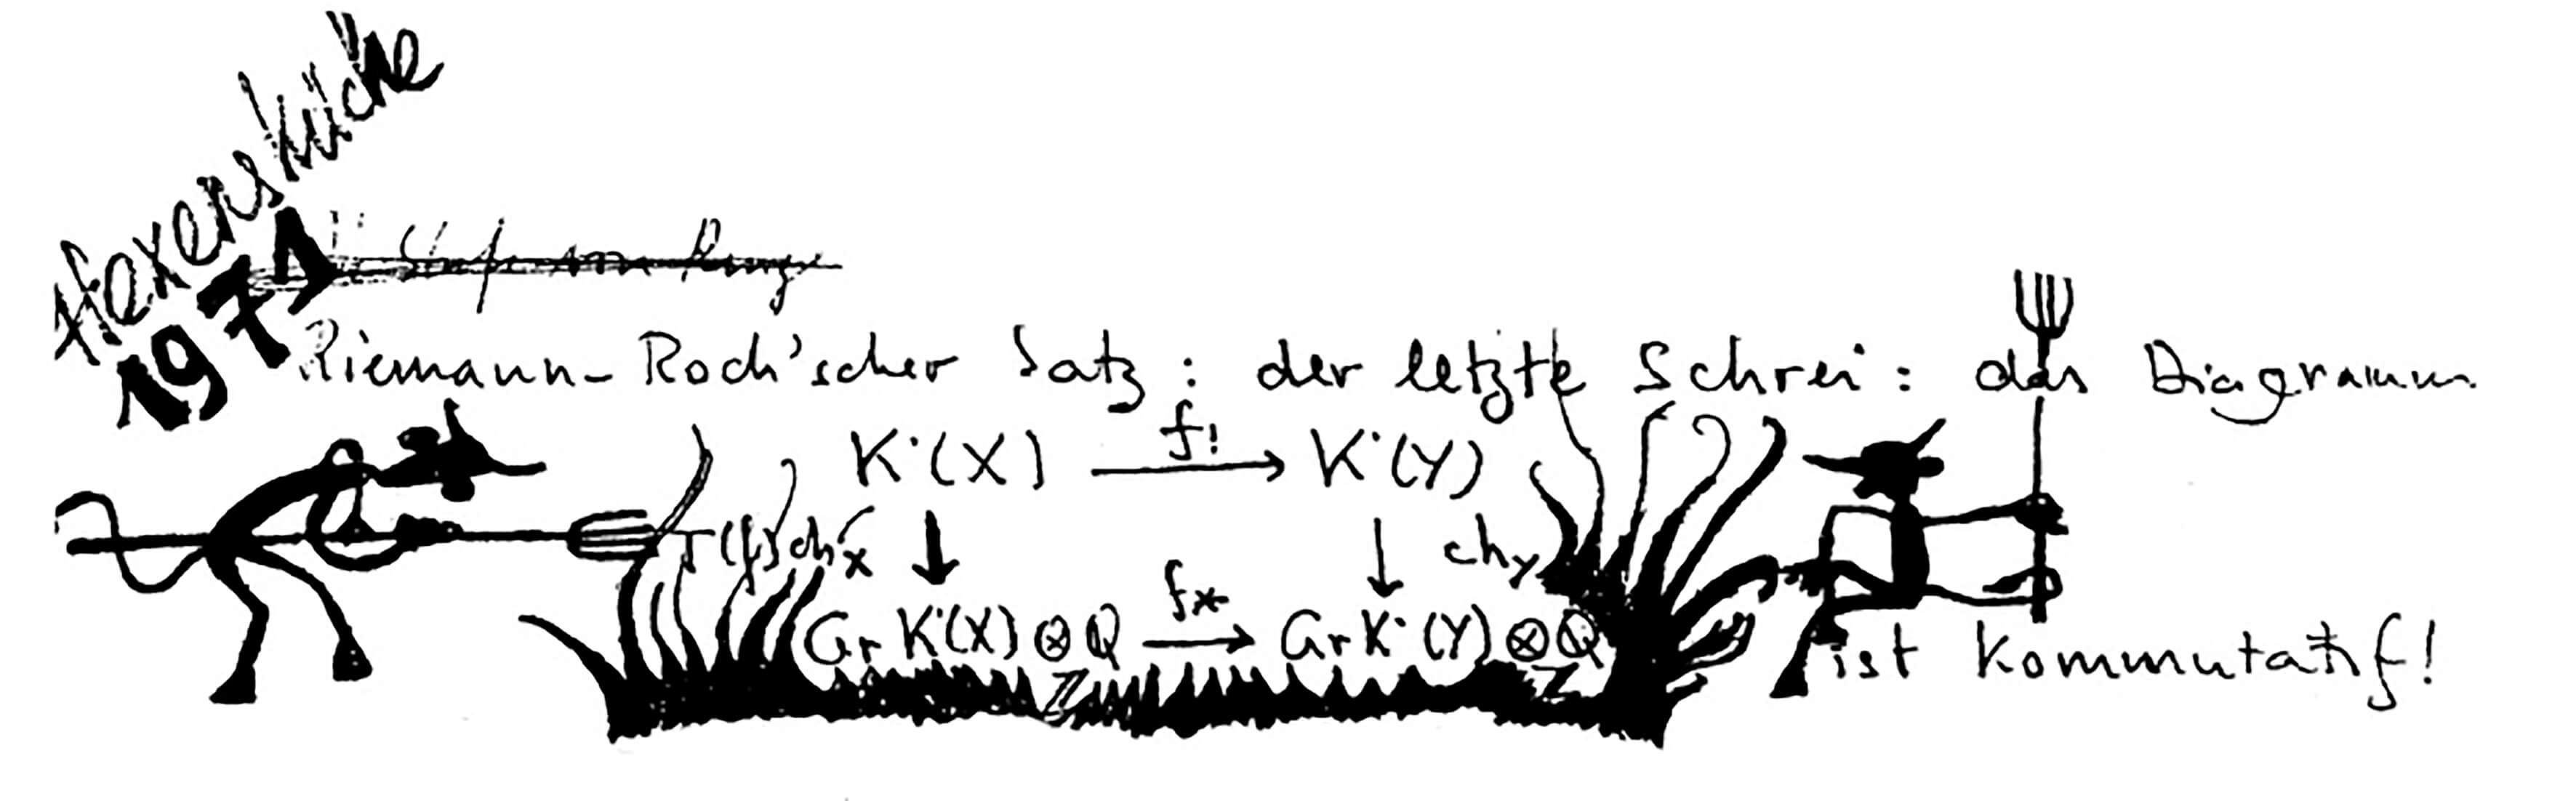 Grothendieck-Riemann-Roch.jpg